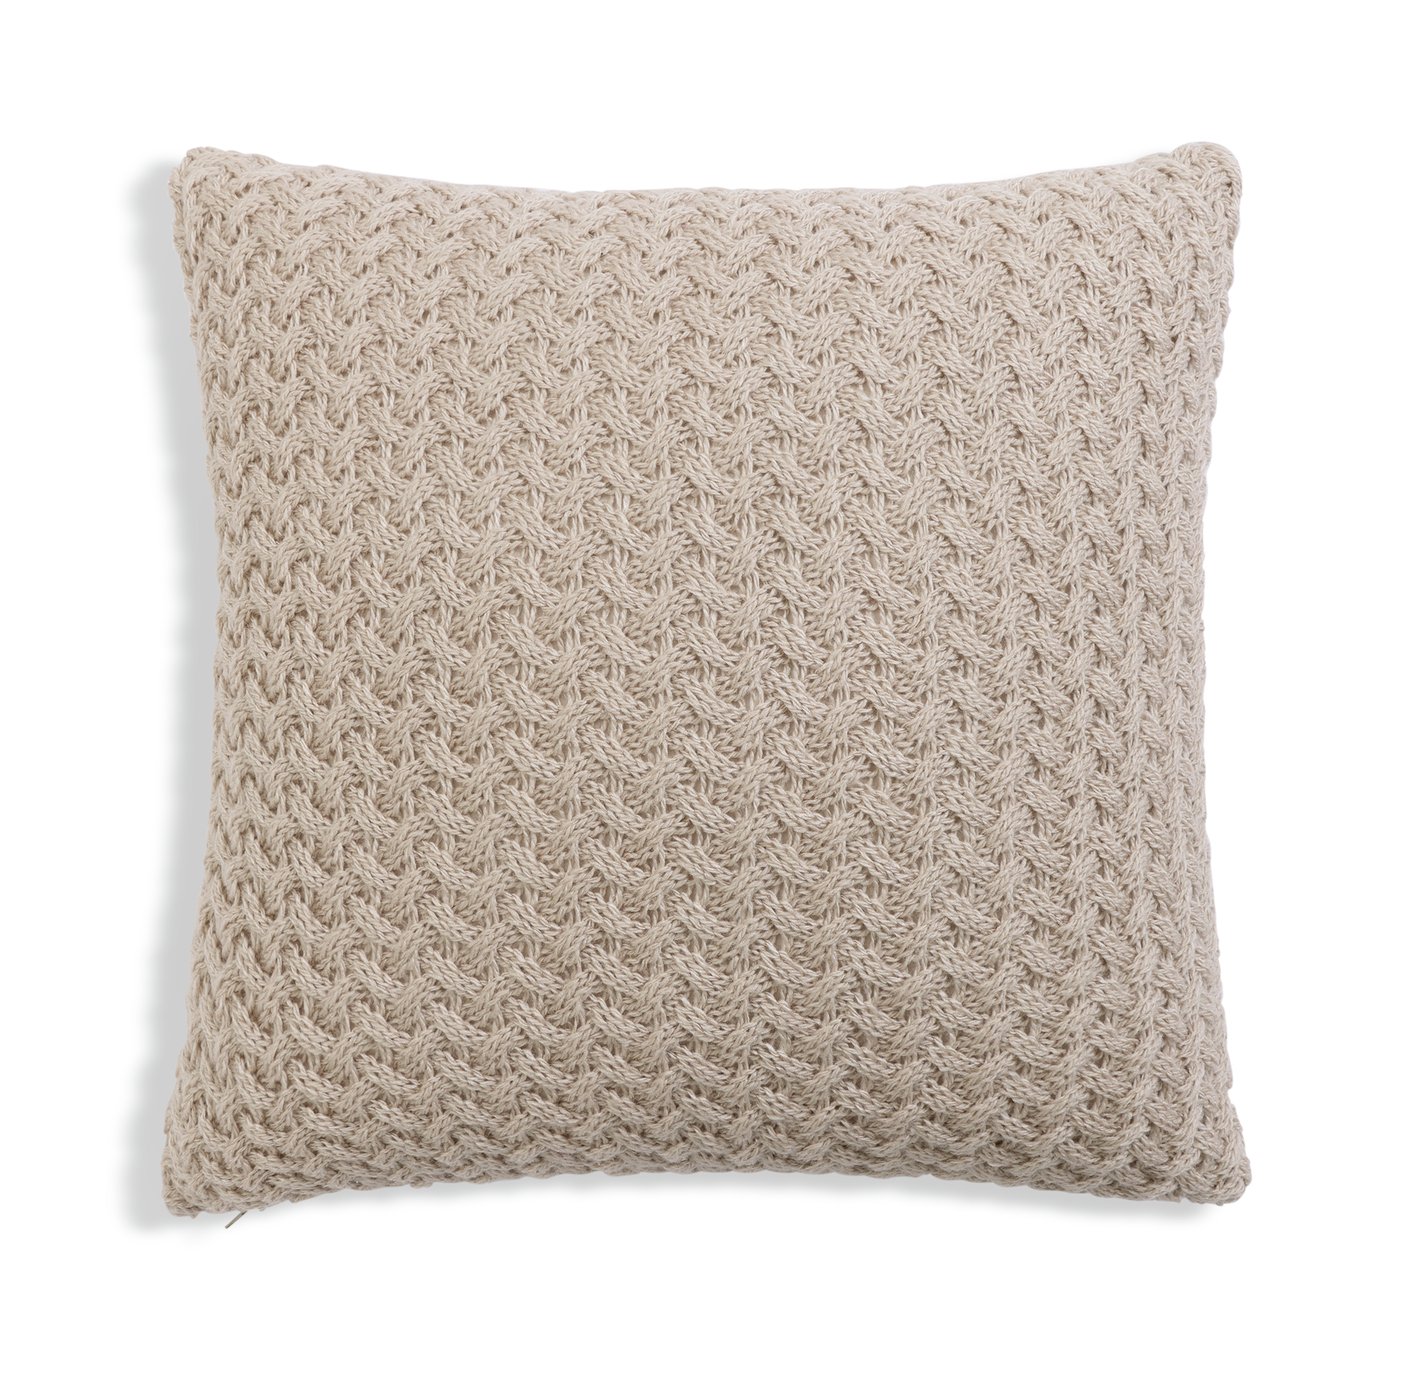 Habitat Plain Knitted Cushion - Natural - 50x50cm